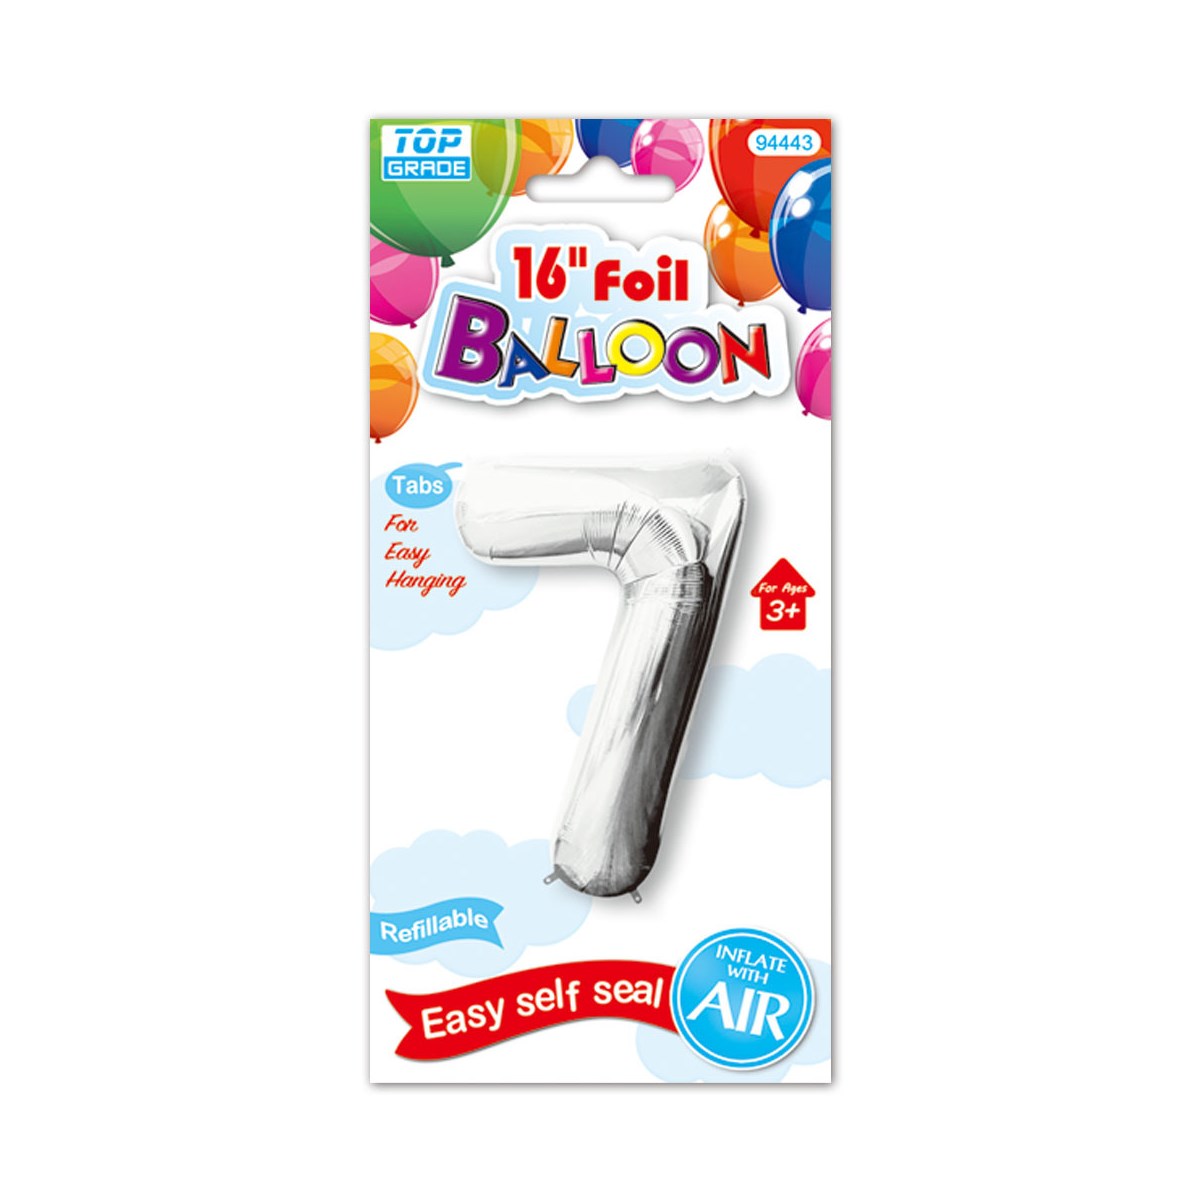 16"foil balloon silv #7 12/600